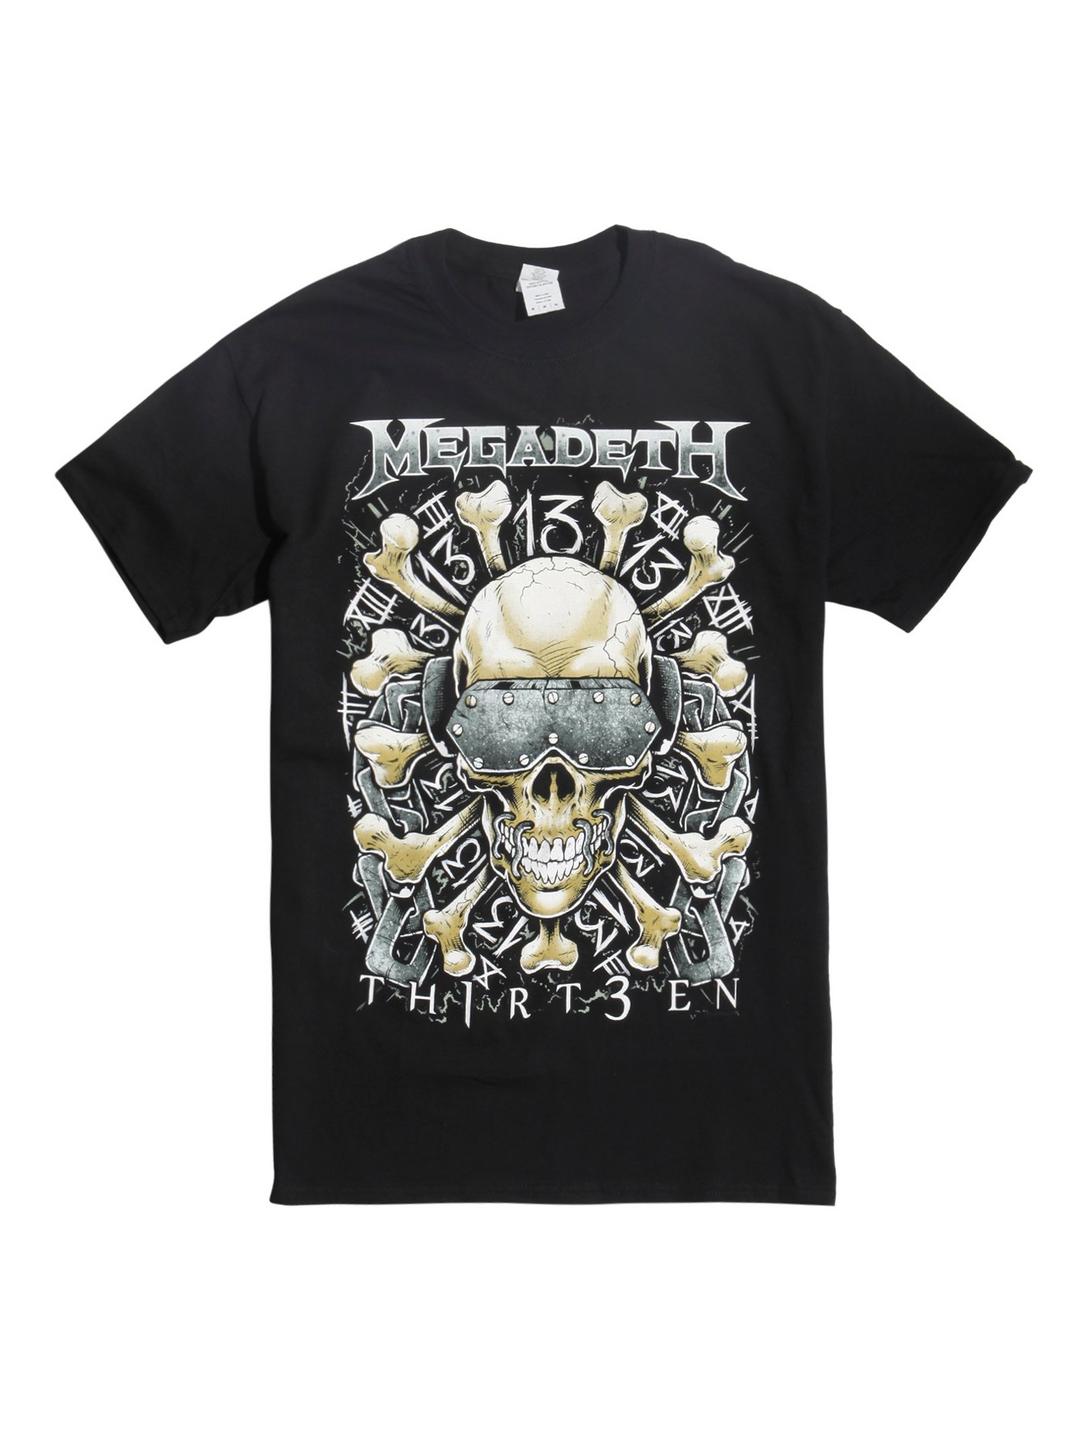 Megadeth TH1RT3EN Skull & Crossbones T-Shirt, BLACK, hi-res